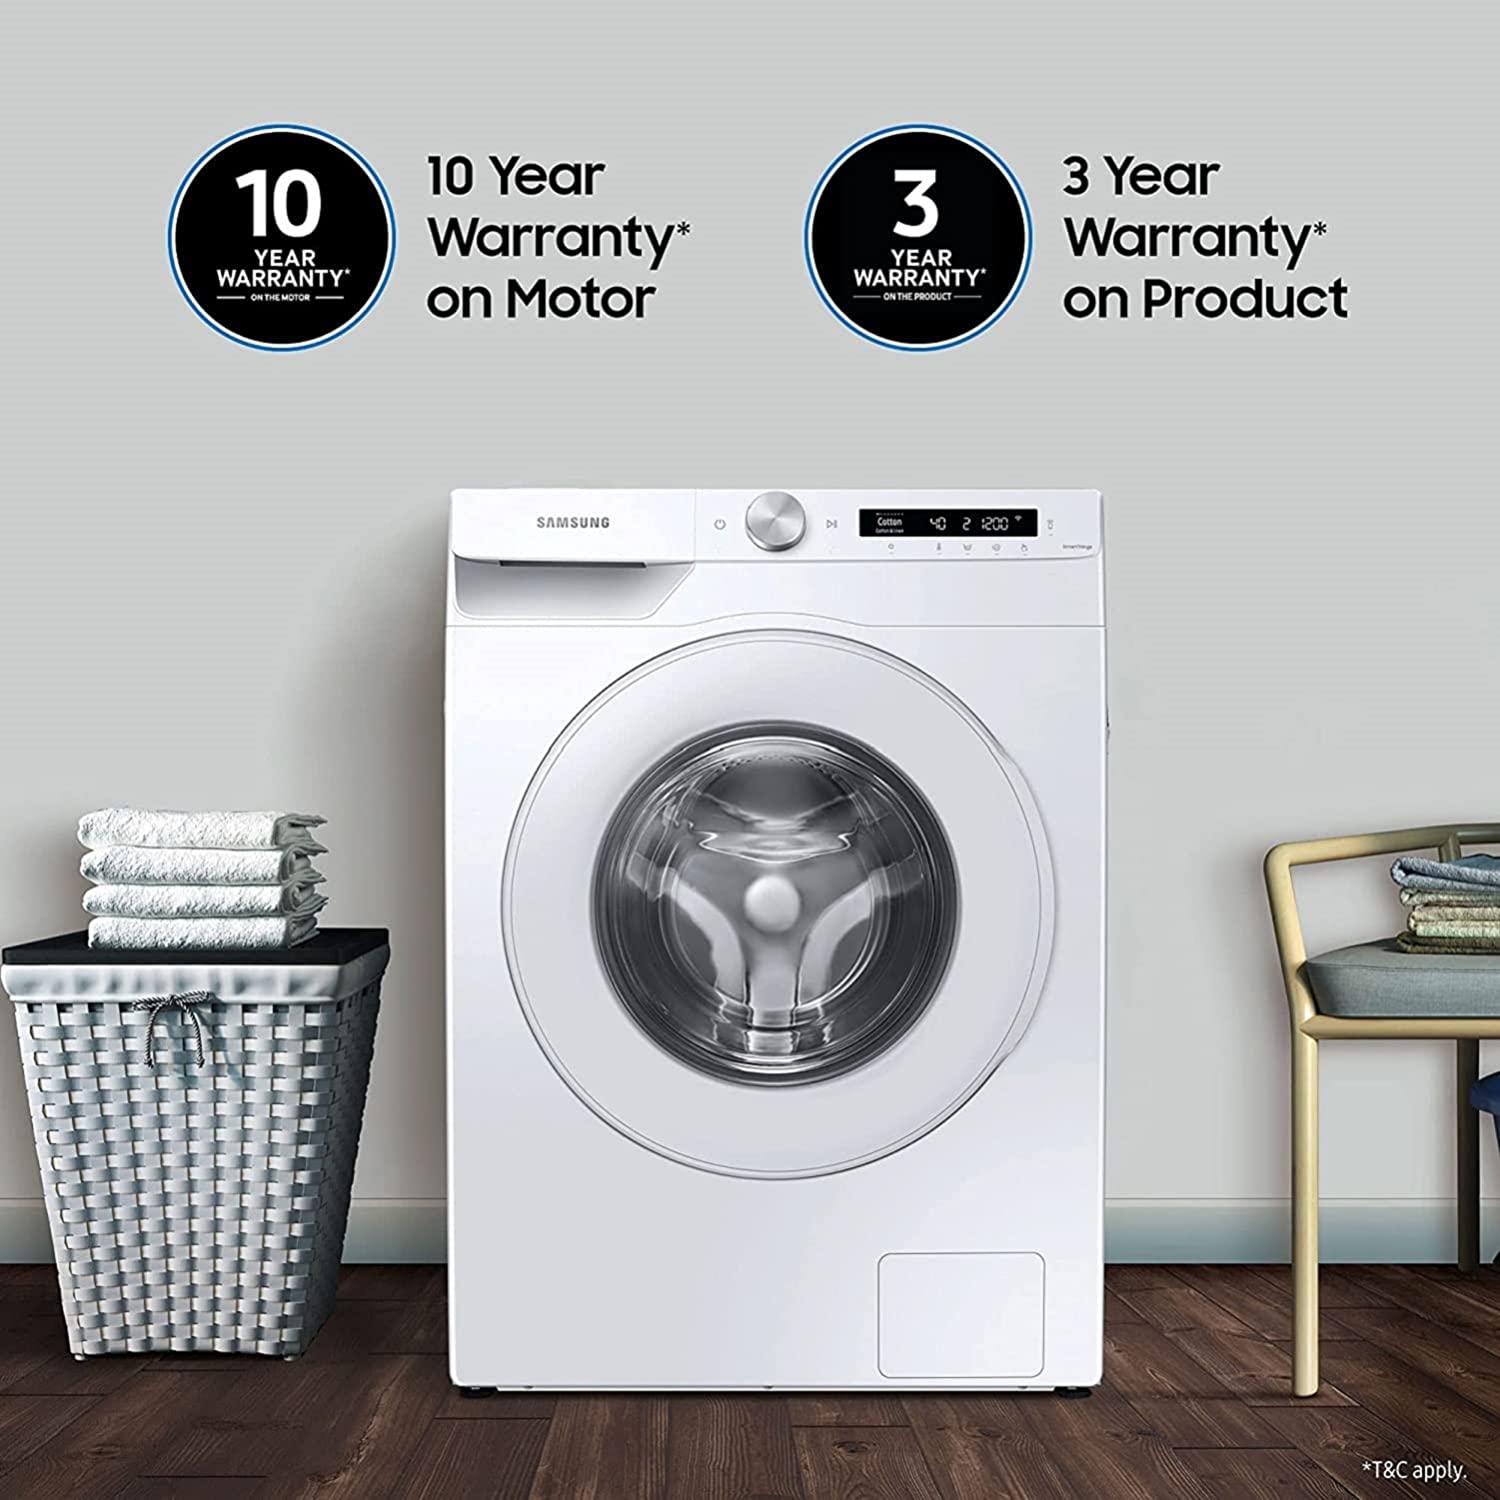 इससे पहले नहीं देखी होंगी इतनी कलरफुल वॉशिंग मशीन, जानिये क्या खास है इस न्यू लॉन्च वॉशिंग मशीन में